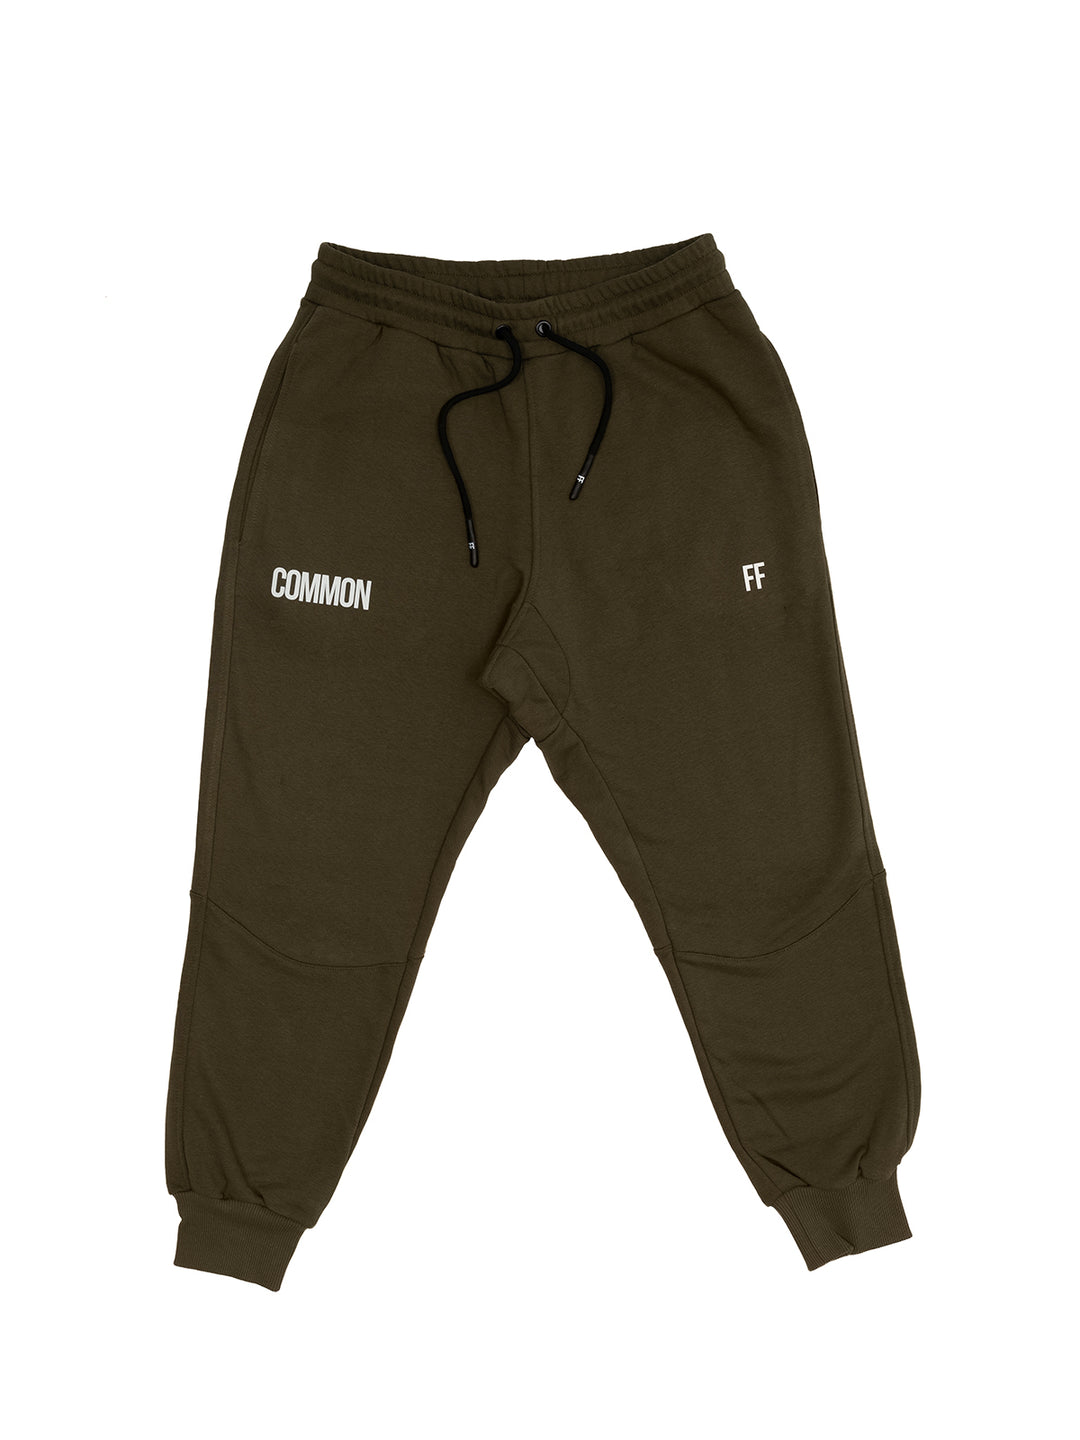 Common / Unisex Sweatpants